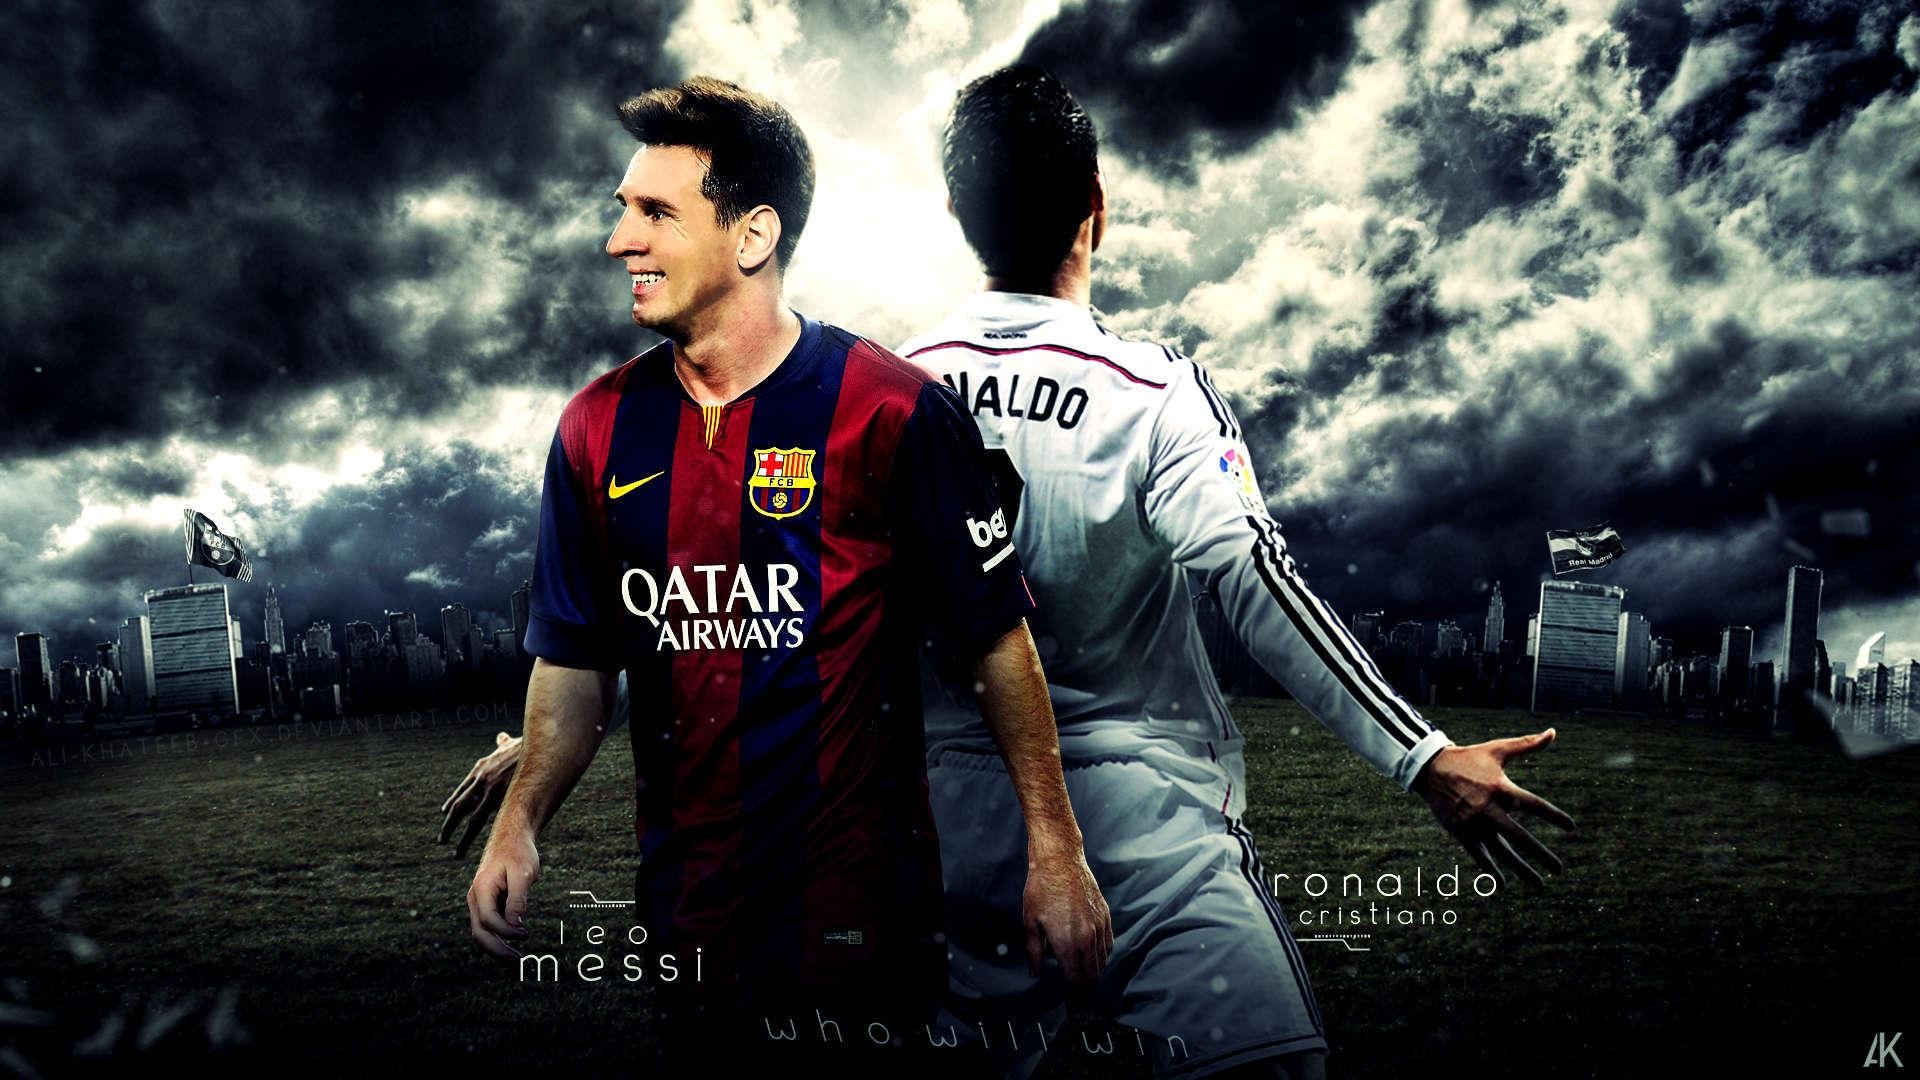 Messi, Ronaldo là hai siêu sao của làng bóng đá thế giới với hàng loạt những thành tích nổi bật. Hãy ngắm nhìn hình nền của hai ngôi sao này để cảm nhận được sự vĩ đại của họ.